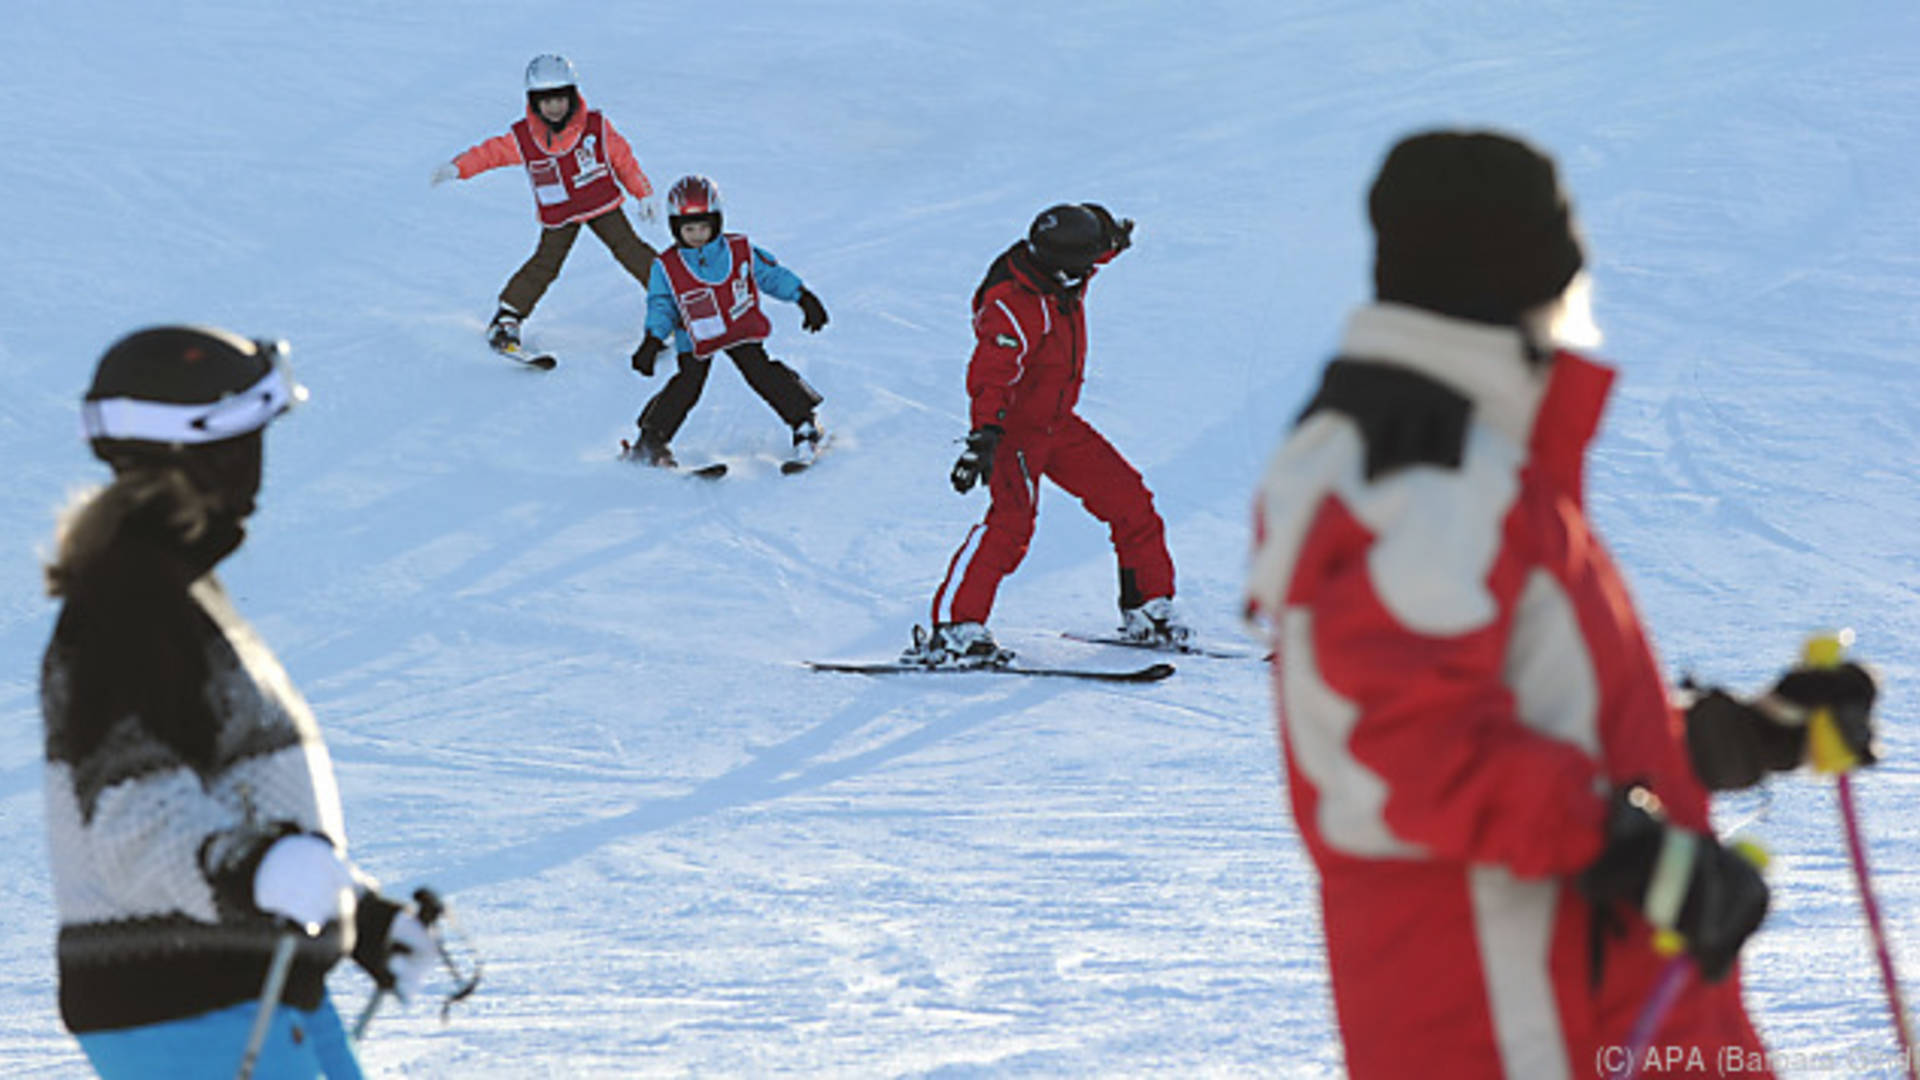 Nach Cluster: Salzburg sagt Skilehrerkurse ab - Klaus Burgschwaiger im Interview